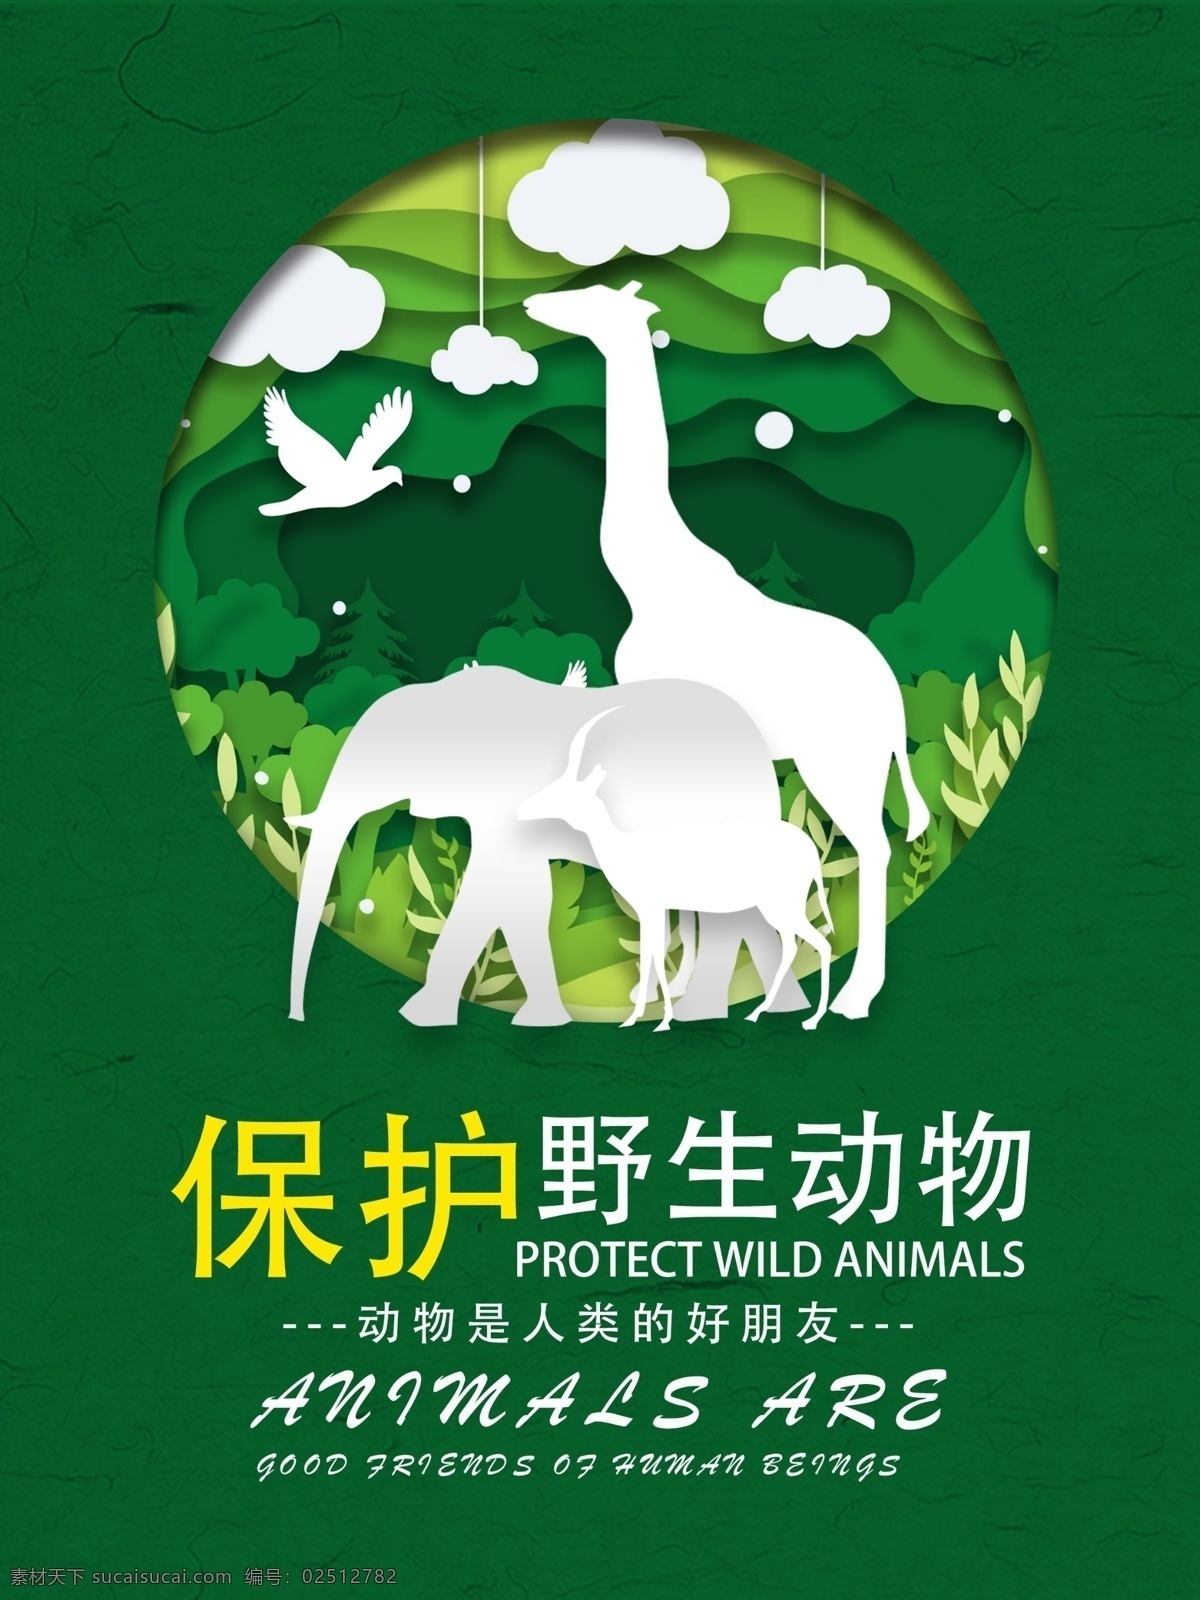 保护 动物 公益 海报 保护动物 动物世界 保护野生动物 野生动物 动物园海报 动物协会 爱护动物 动物园展板 动物园广告 动物日 保护生物 自然保护区 关爱野生动物 动物公益 保护动物宣传 野生动物展板